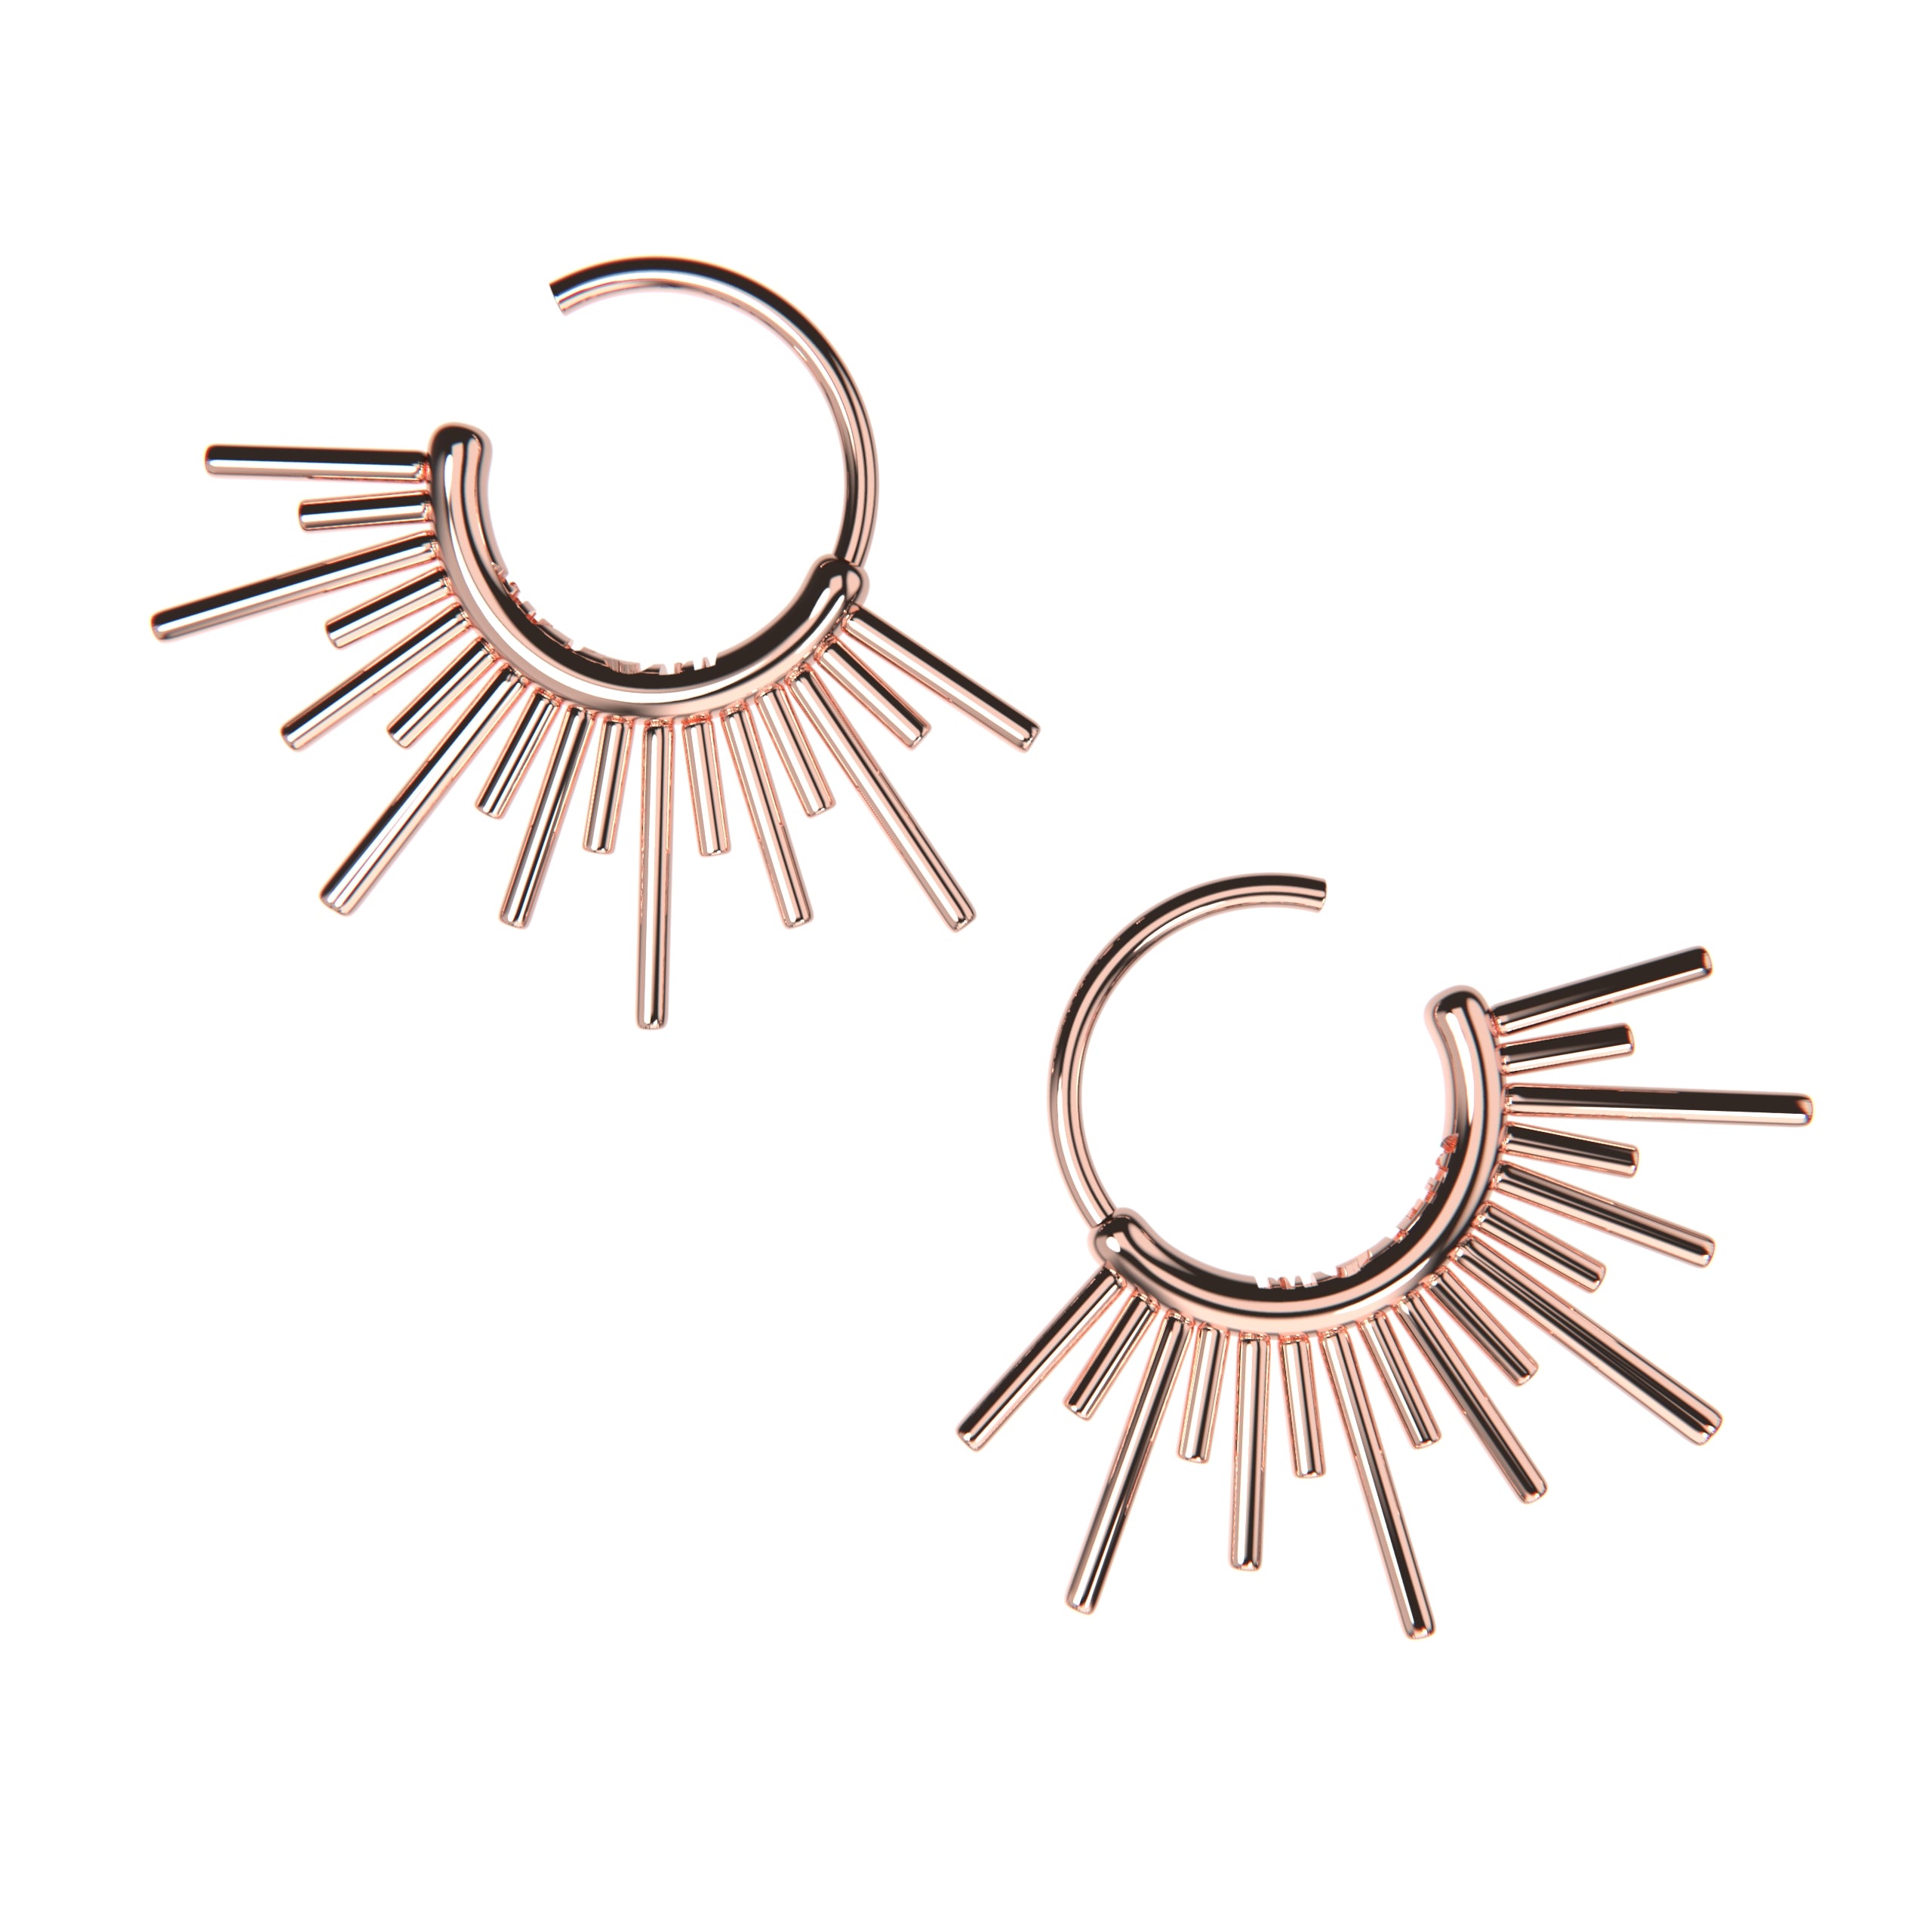 Sun Burst Endless Hoop Earrings - Melanie Golden Jewelry - bestseller, celestial, Designer Series, earrings, hoop, hoop earrings, threader, threader earrings